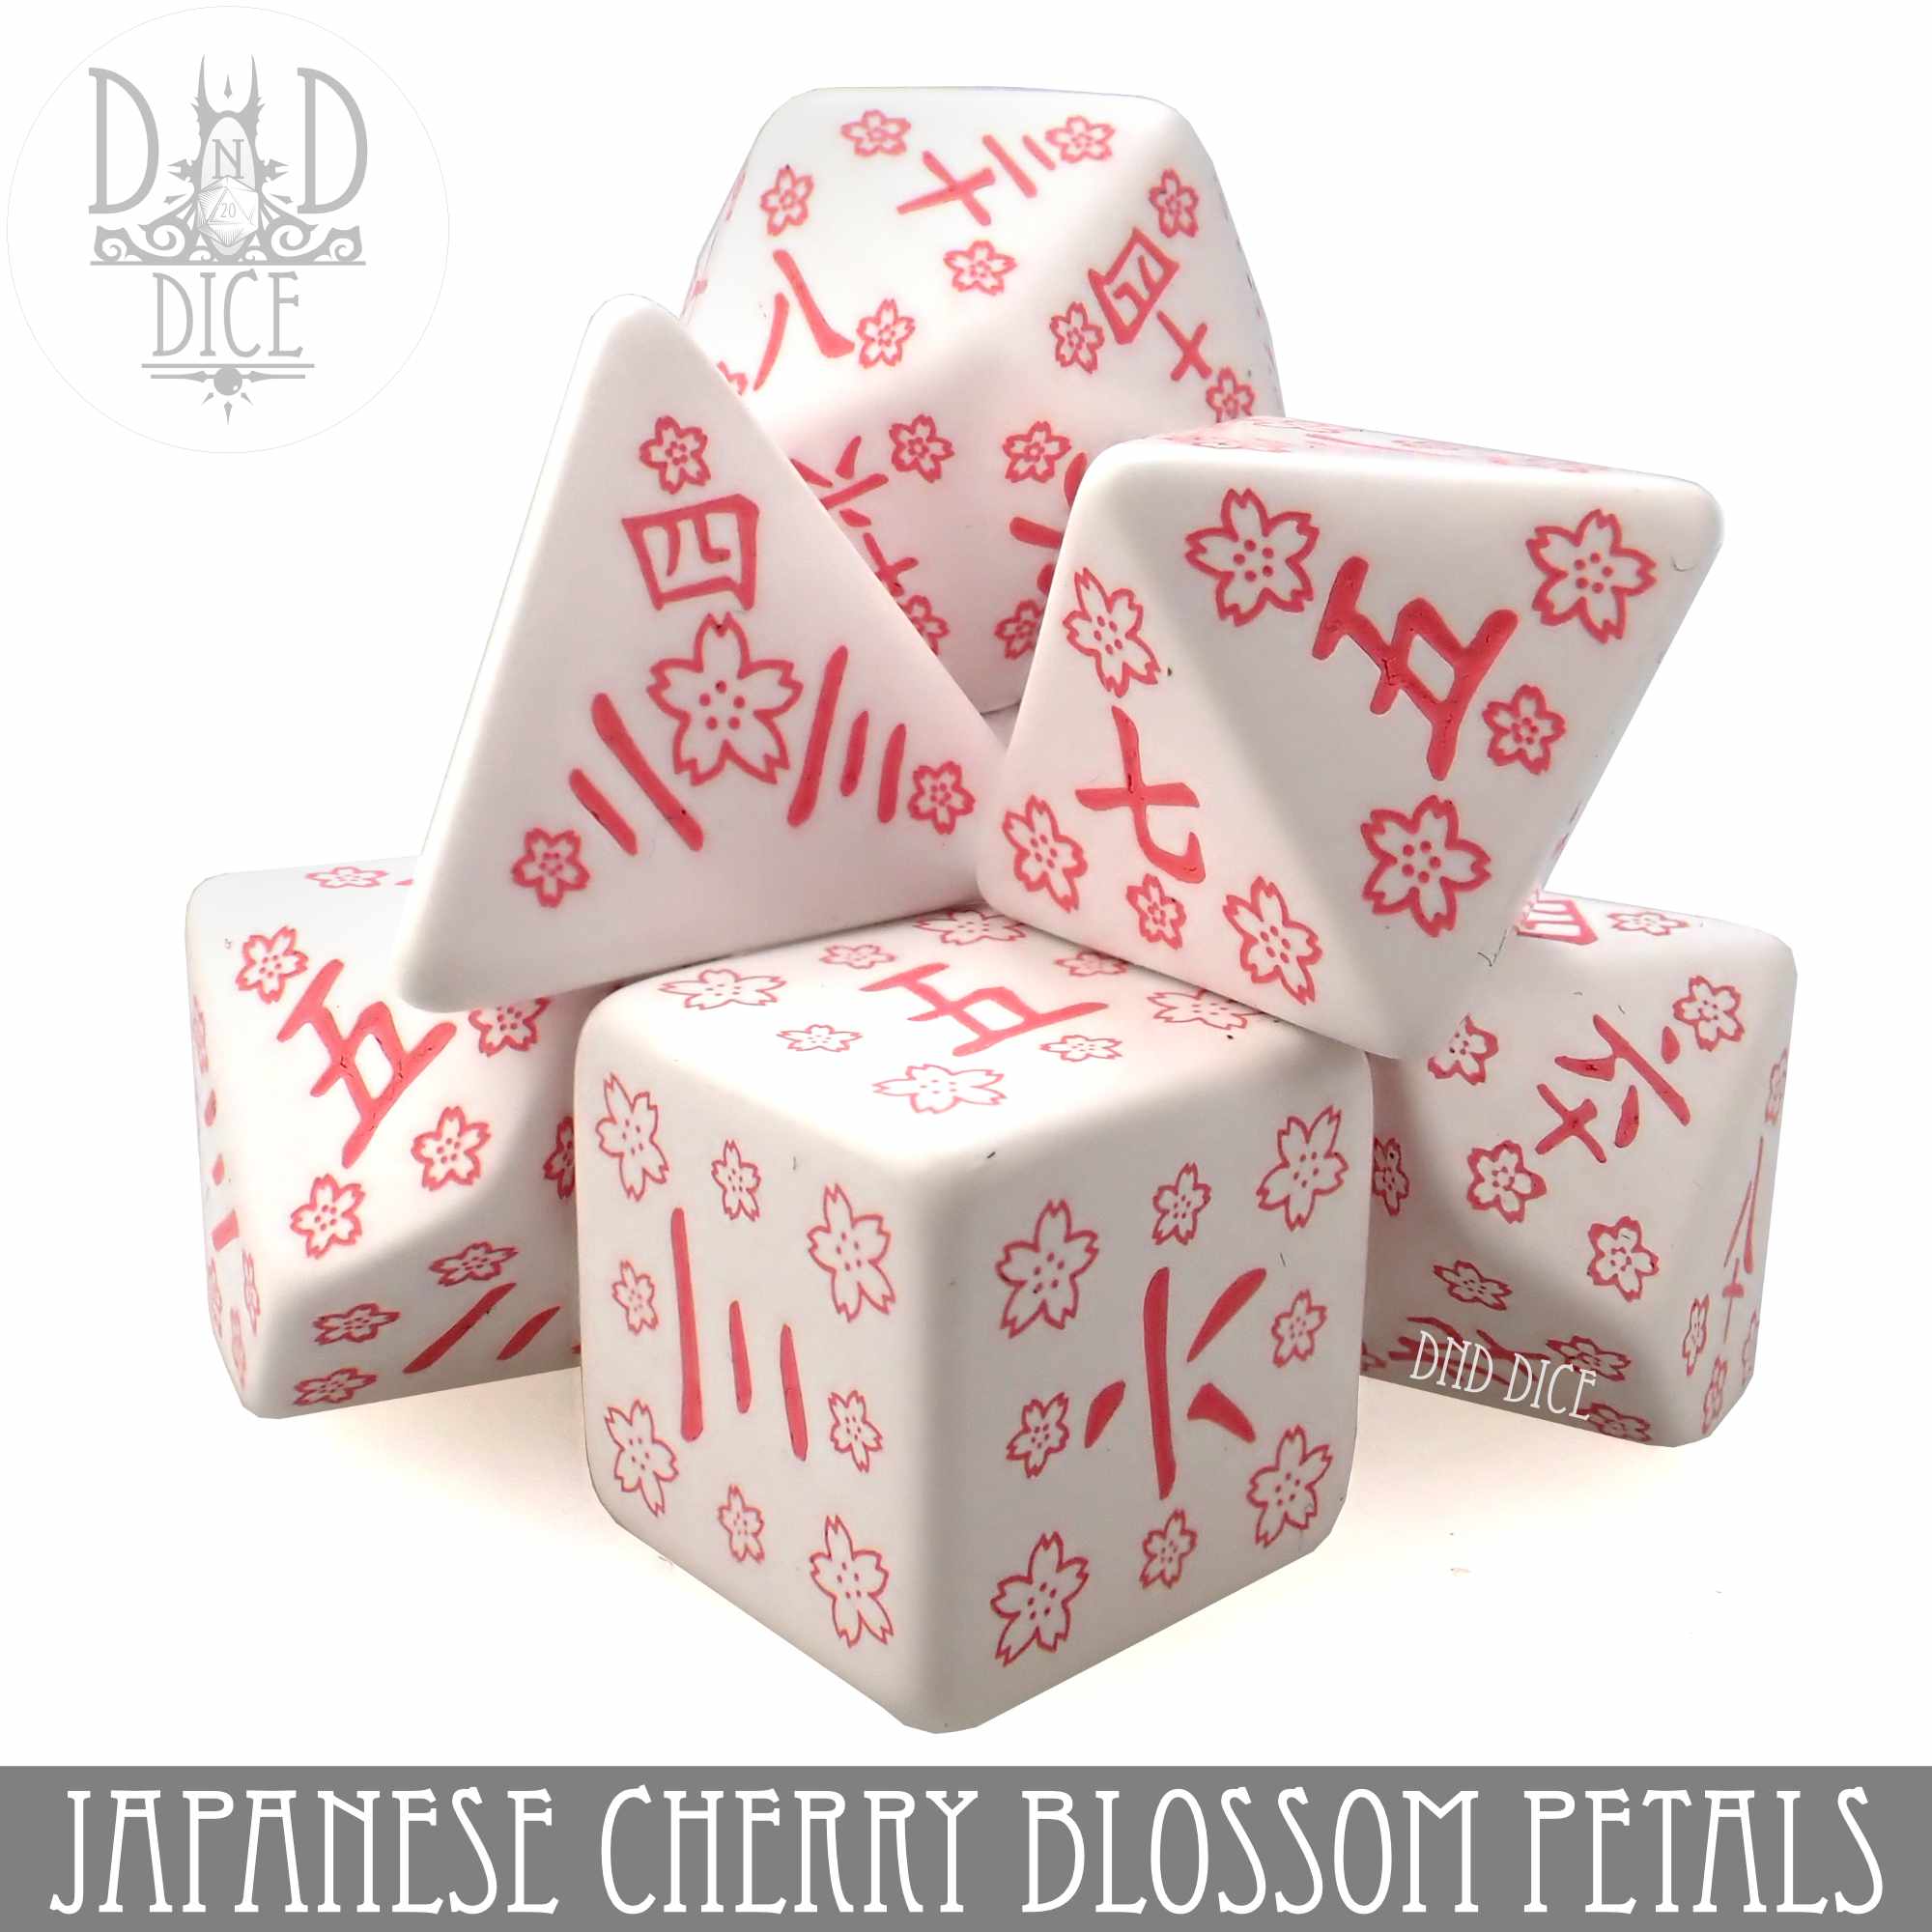 Japanese Cherry Blossom Petals Dice Set